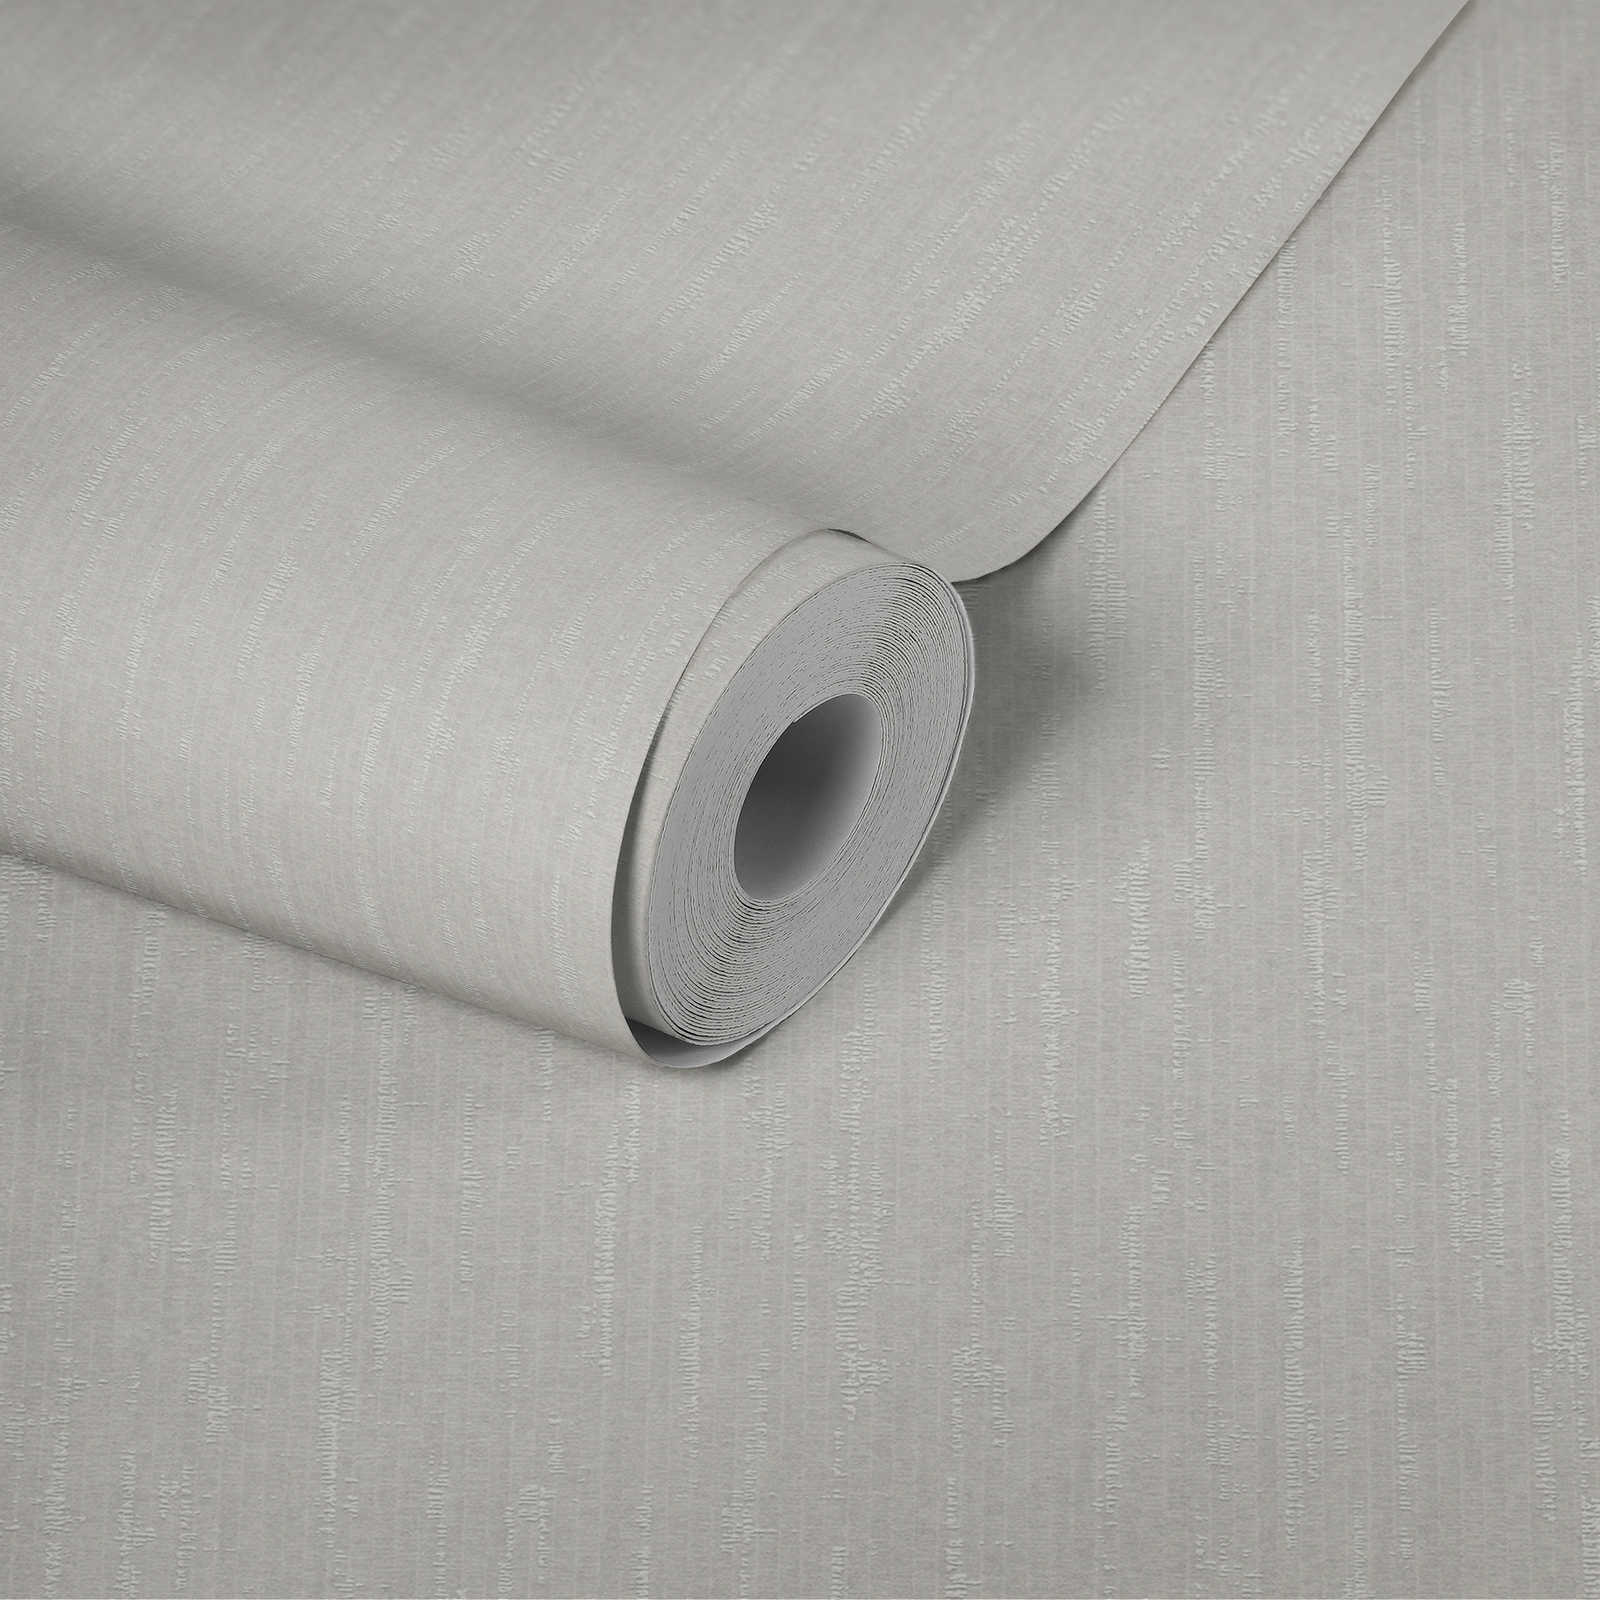             Papier peint intissé blanc avec effet scintillant et design texturé - blanc
        